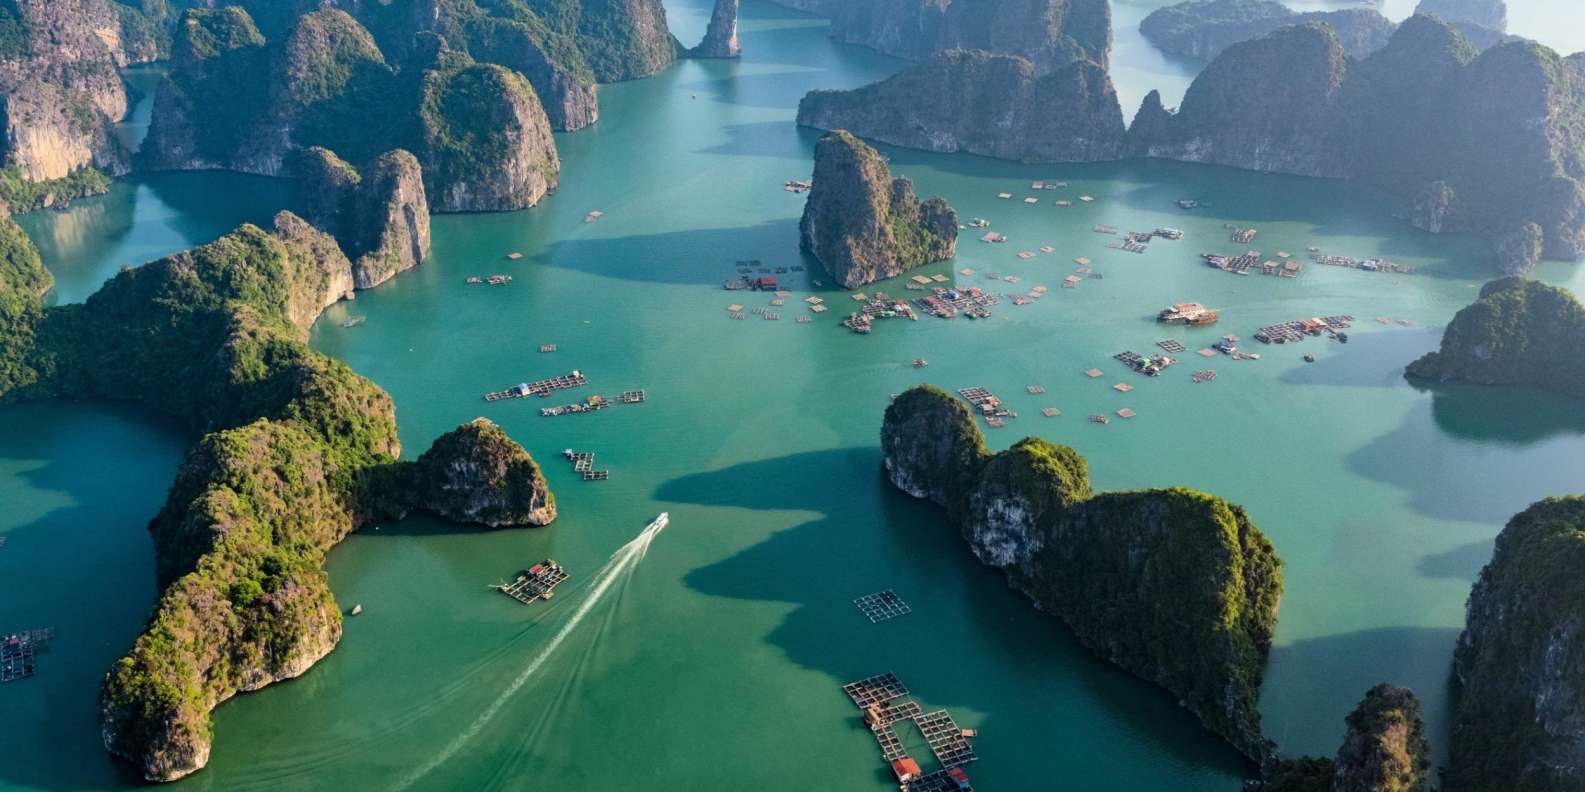 Бухта халонг во вьетнаме: описание, фото